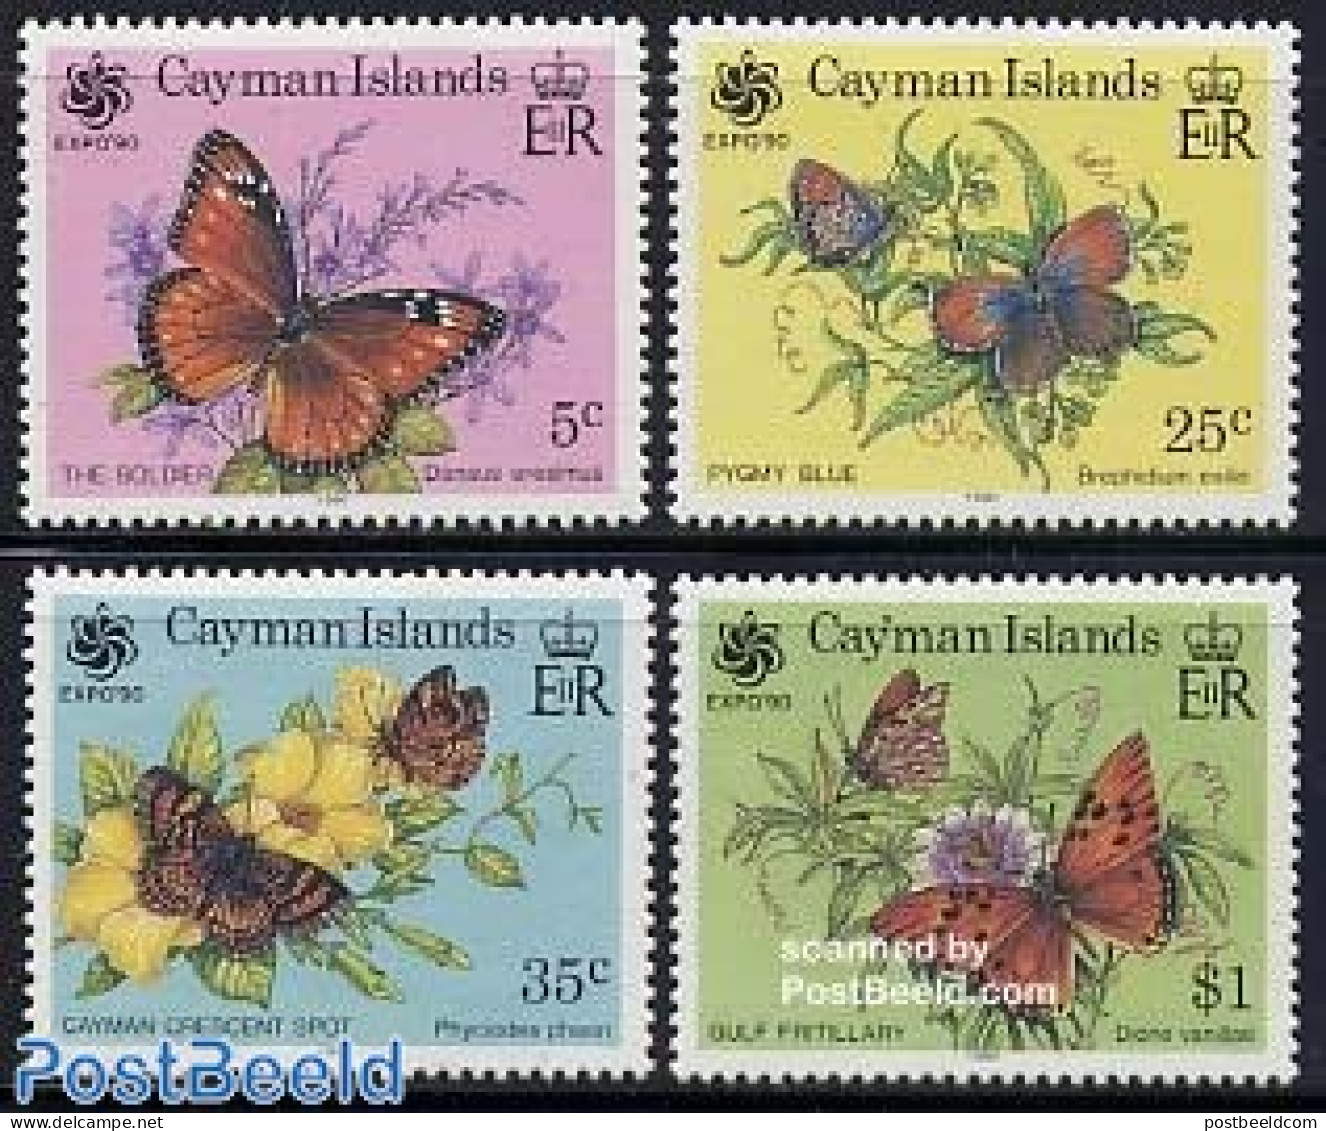 Cayman Islands 1990 Expo, Butterflies 4v, Mint NH, Nature - Butterflies - Iles Caïmans